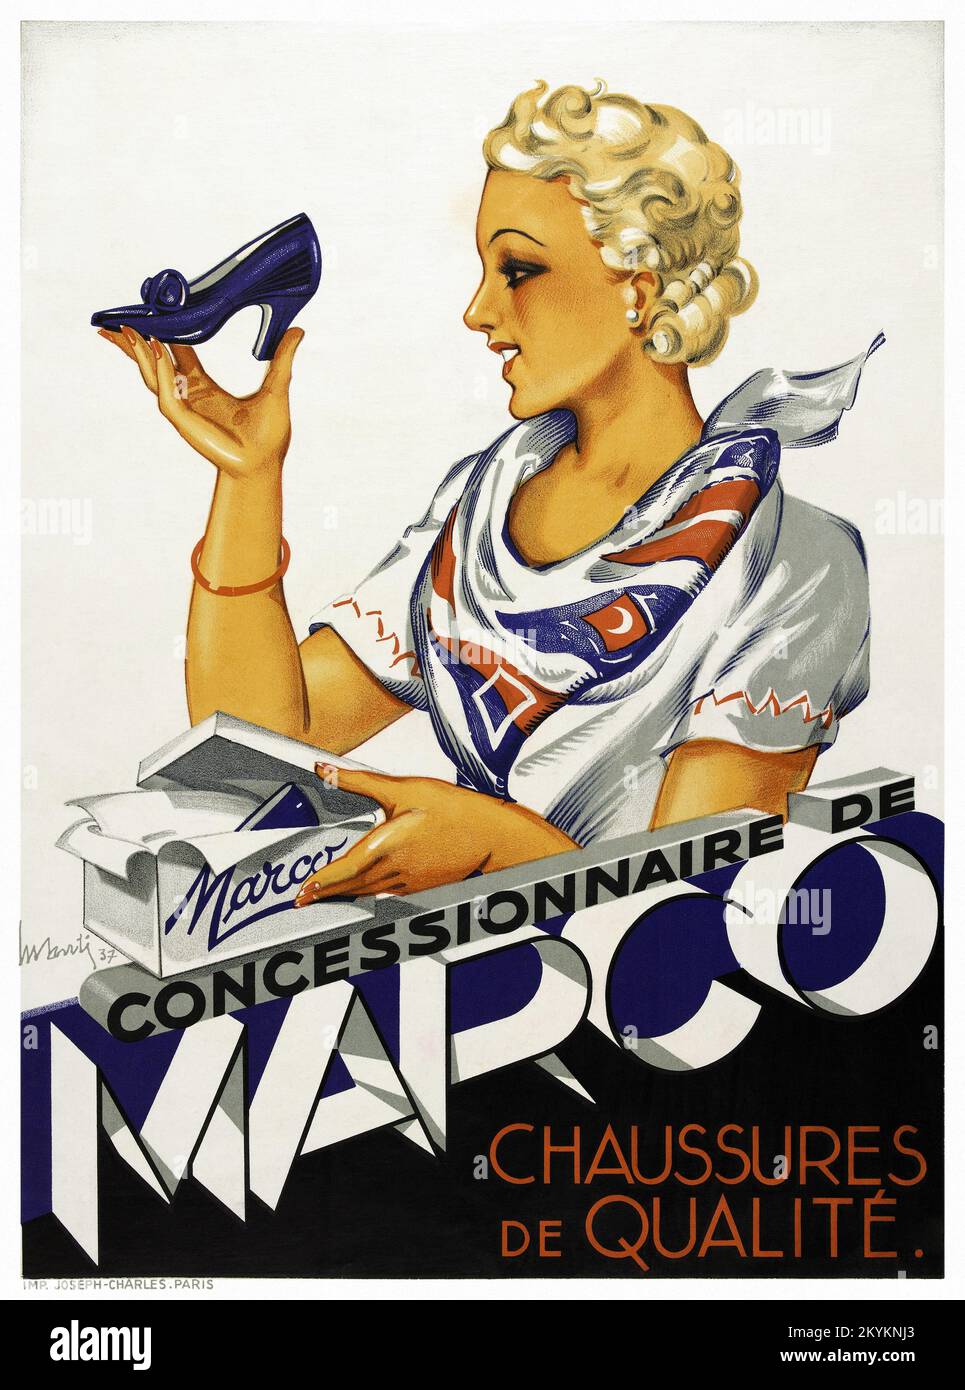 Konzessionär de Marco. Chaussures de qualité von Marcel Santi (1897-1986). Poster wurde 1937 in Frankreich veröffentlicht. Stockfoto